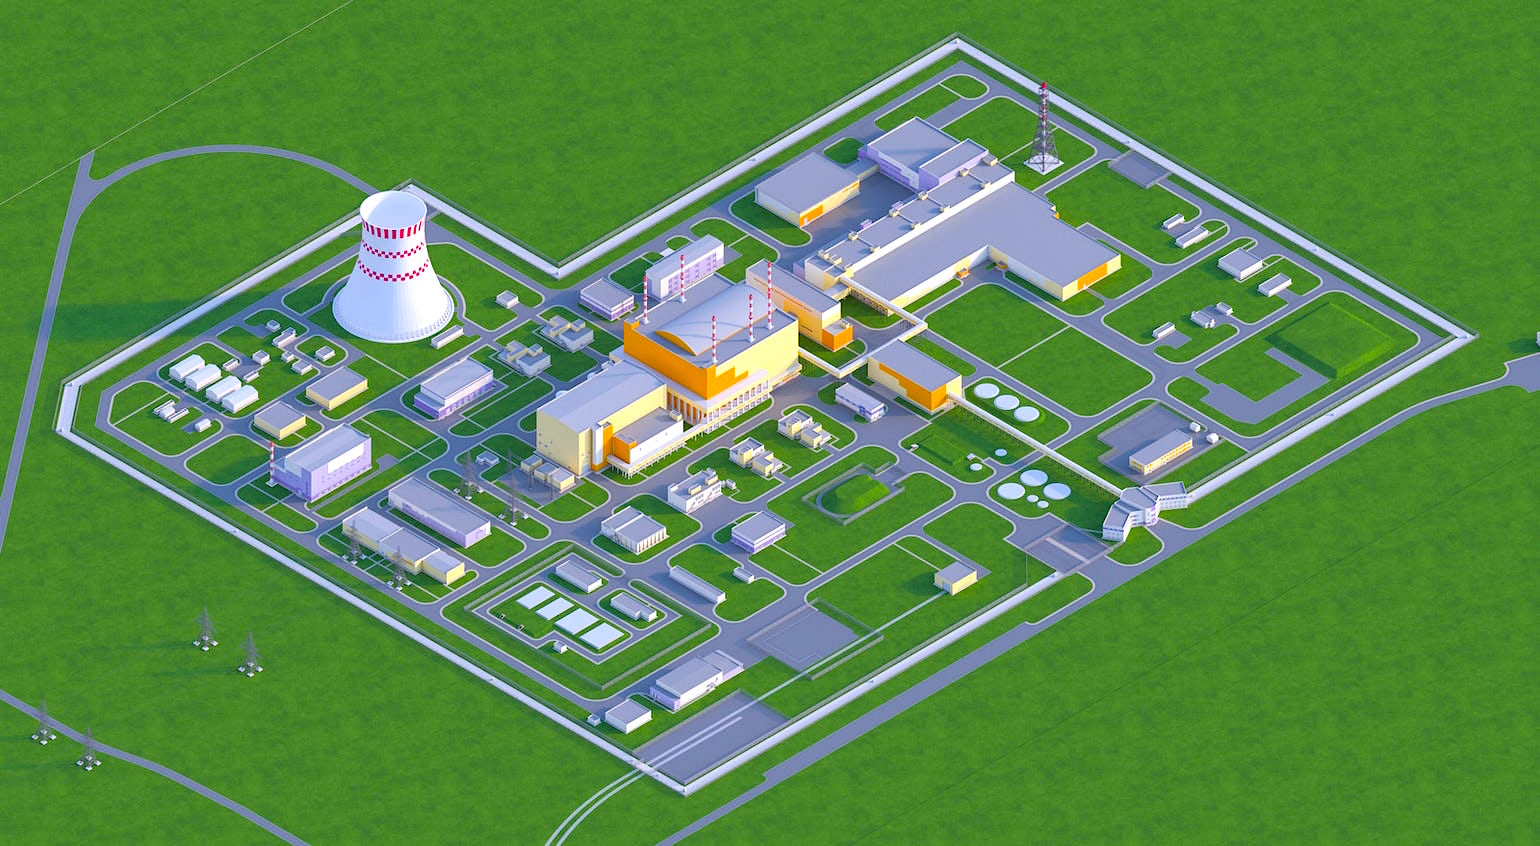 Аэс школа. Брест 300 Северск Росатом. Проект прорыв ядерный реактор Брест-300. ОДЭК Брест 300. Сибирский химический комбинат Северск.